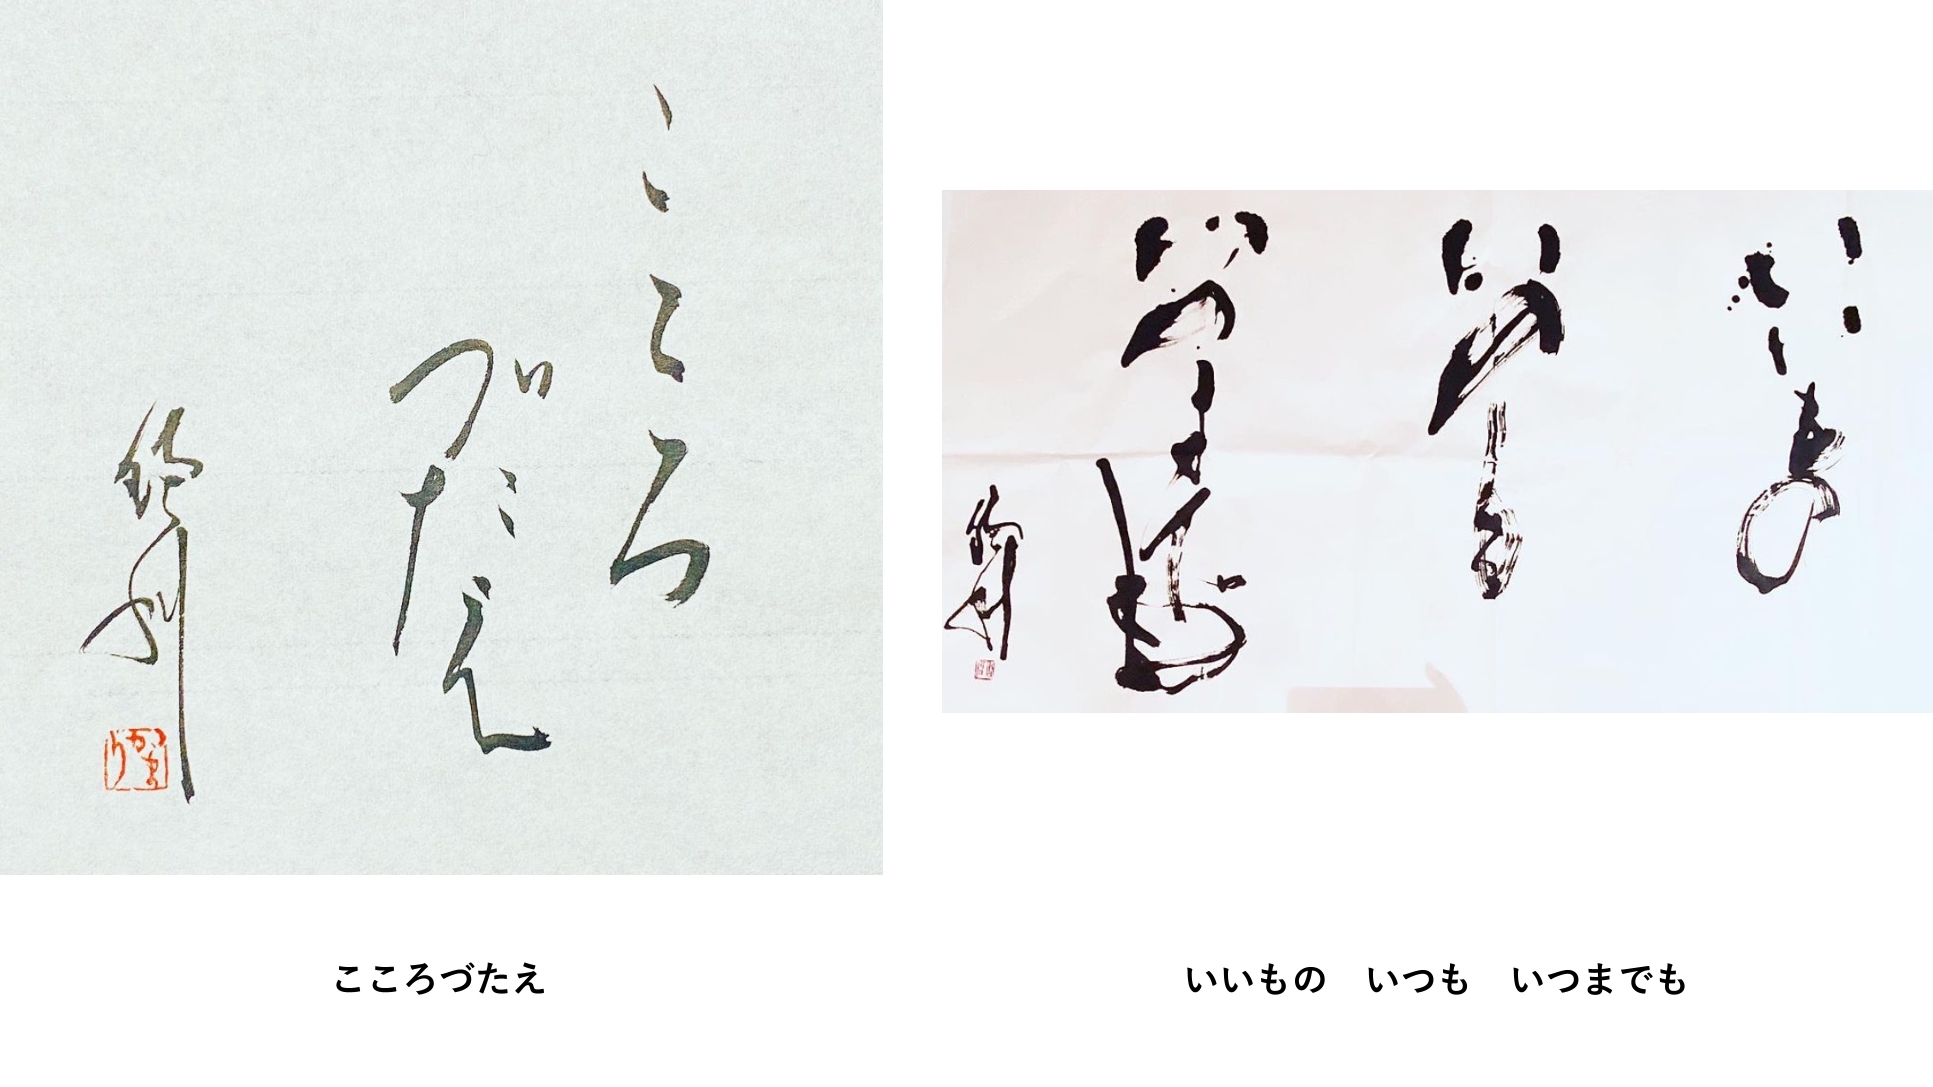 Kamari Maeda | Calligrapher in Japan